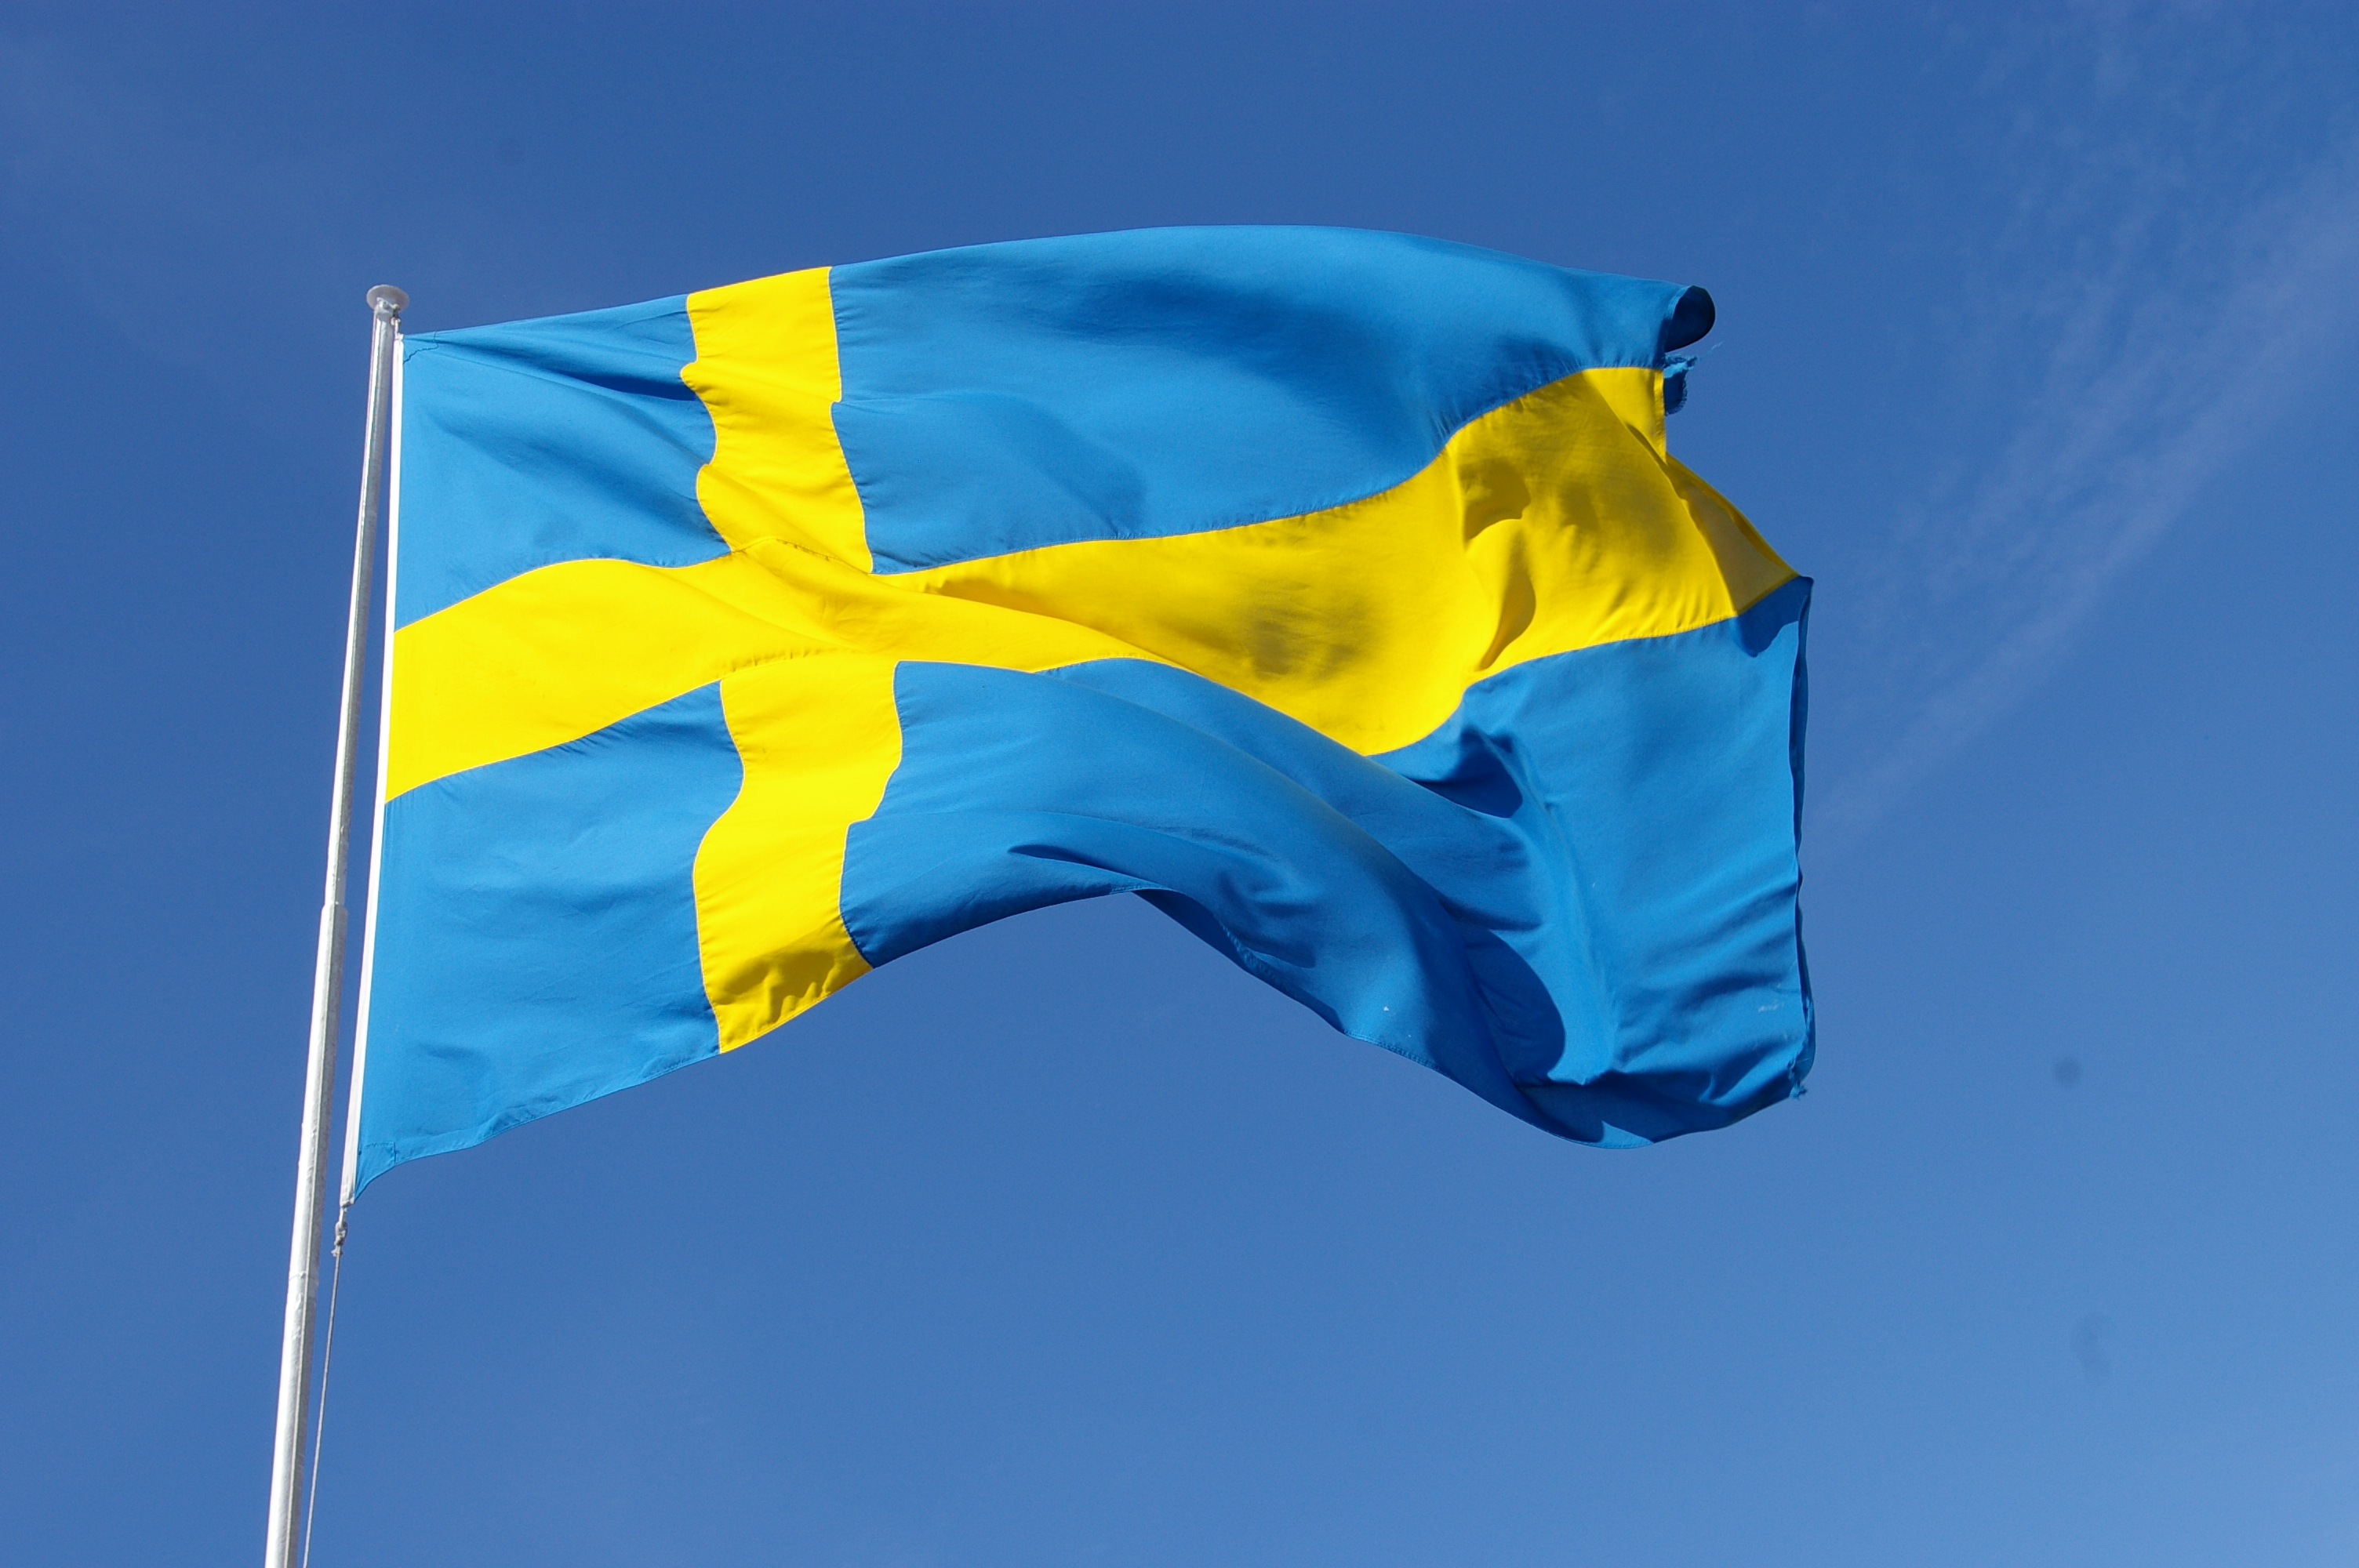 Svenska flaggan i gult och blått